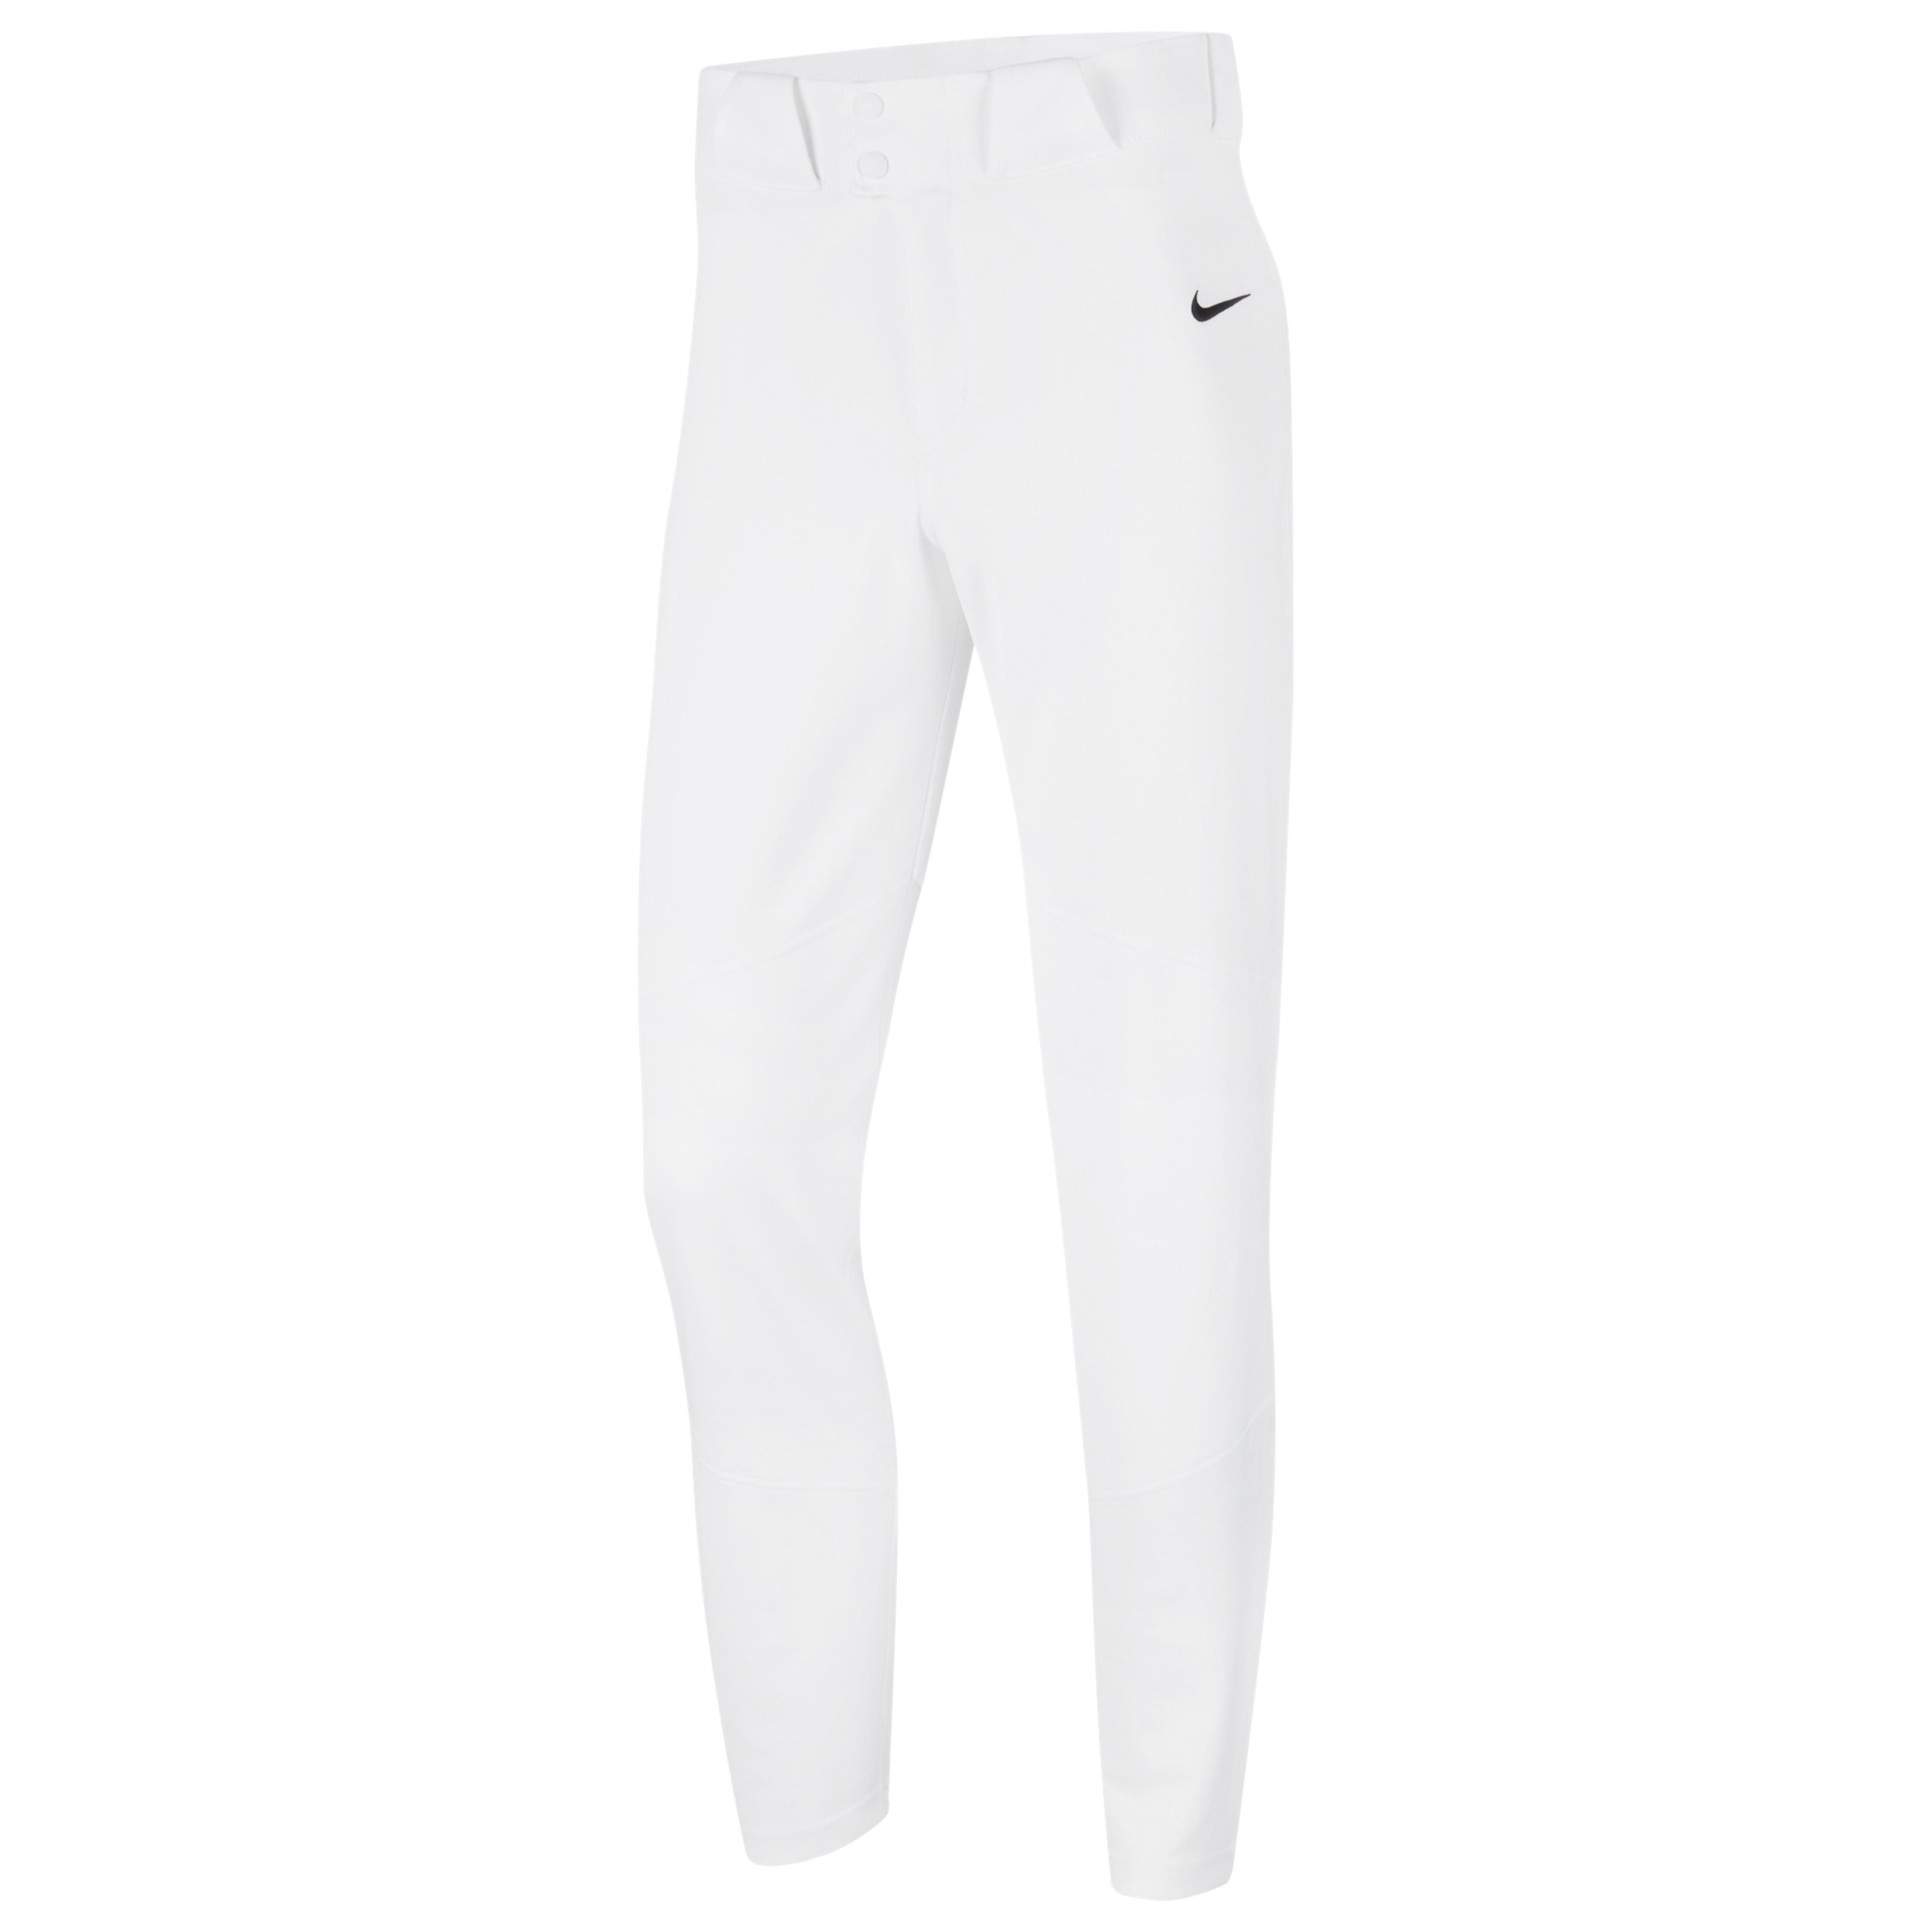 Nike Synthetic Vapor Select Baseball Pants in White/Black (White) for ...